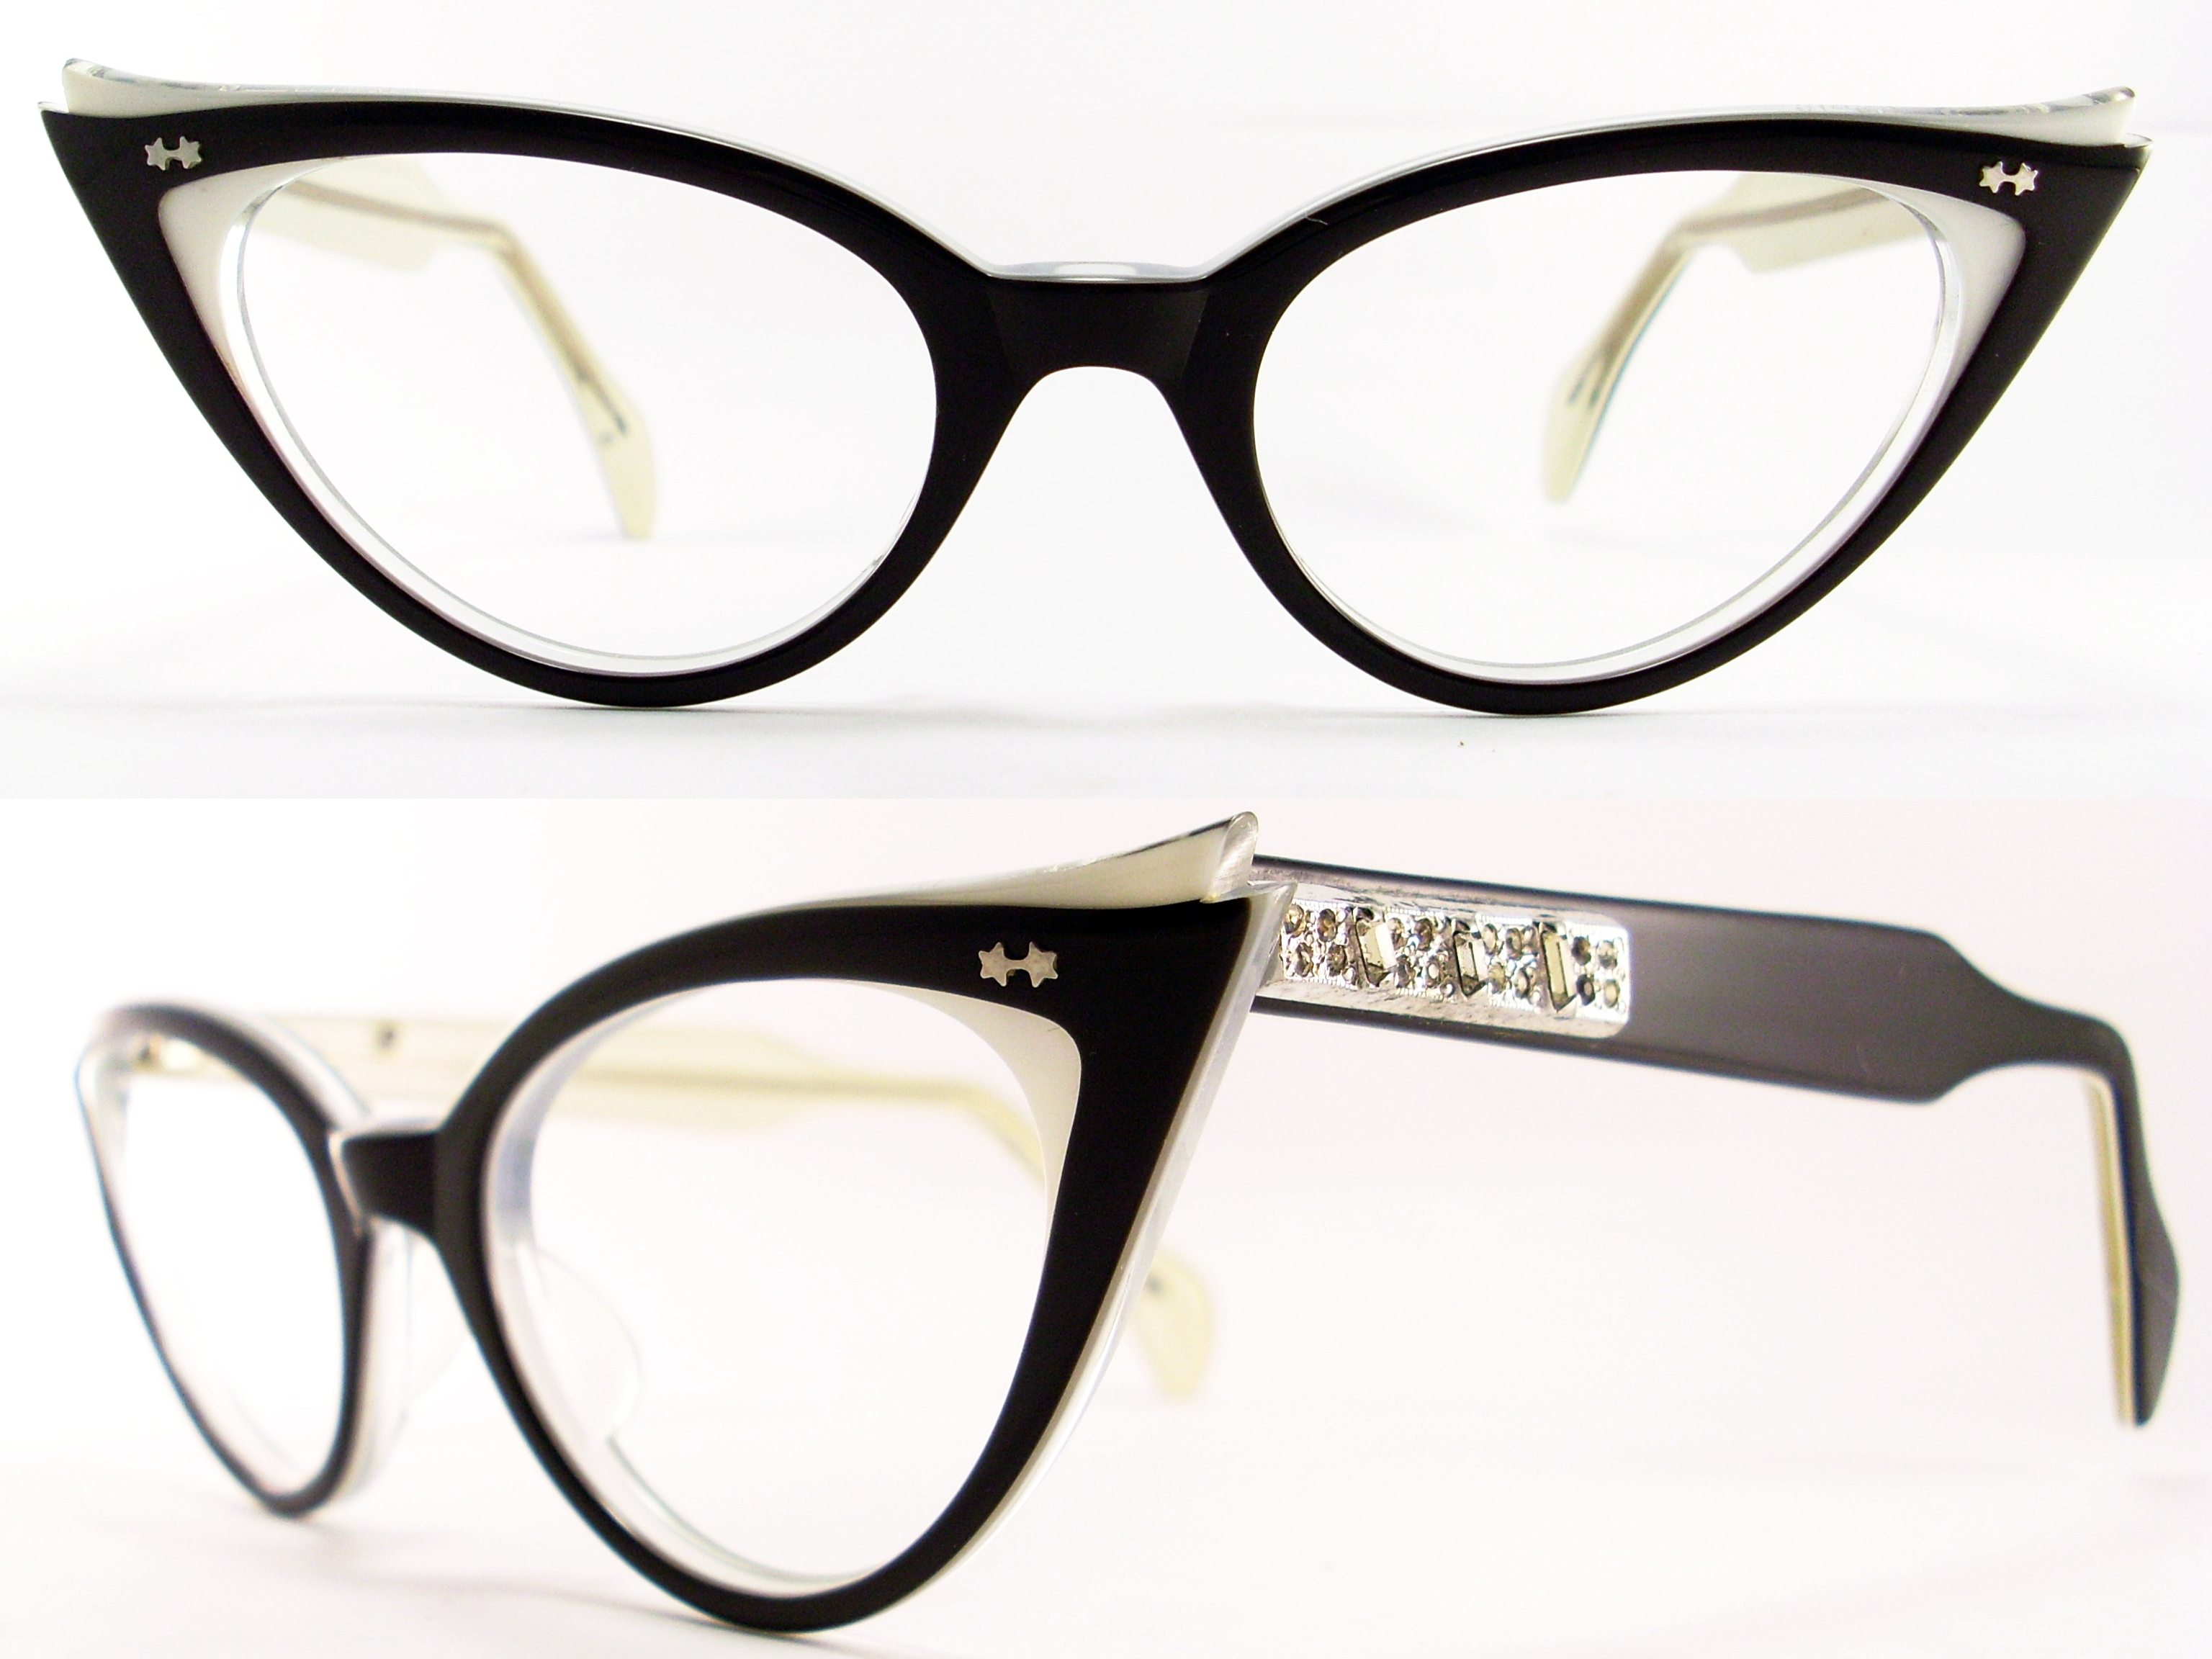 Glasses frame. Форма оправы кошачий глаз. Винтажные очки для зрения. Оправа для очков кошачий глаз. Очки лисички женские для зрения.